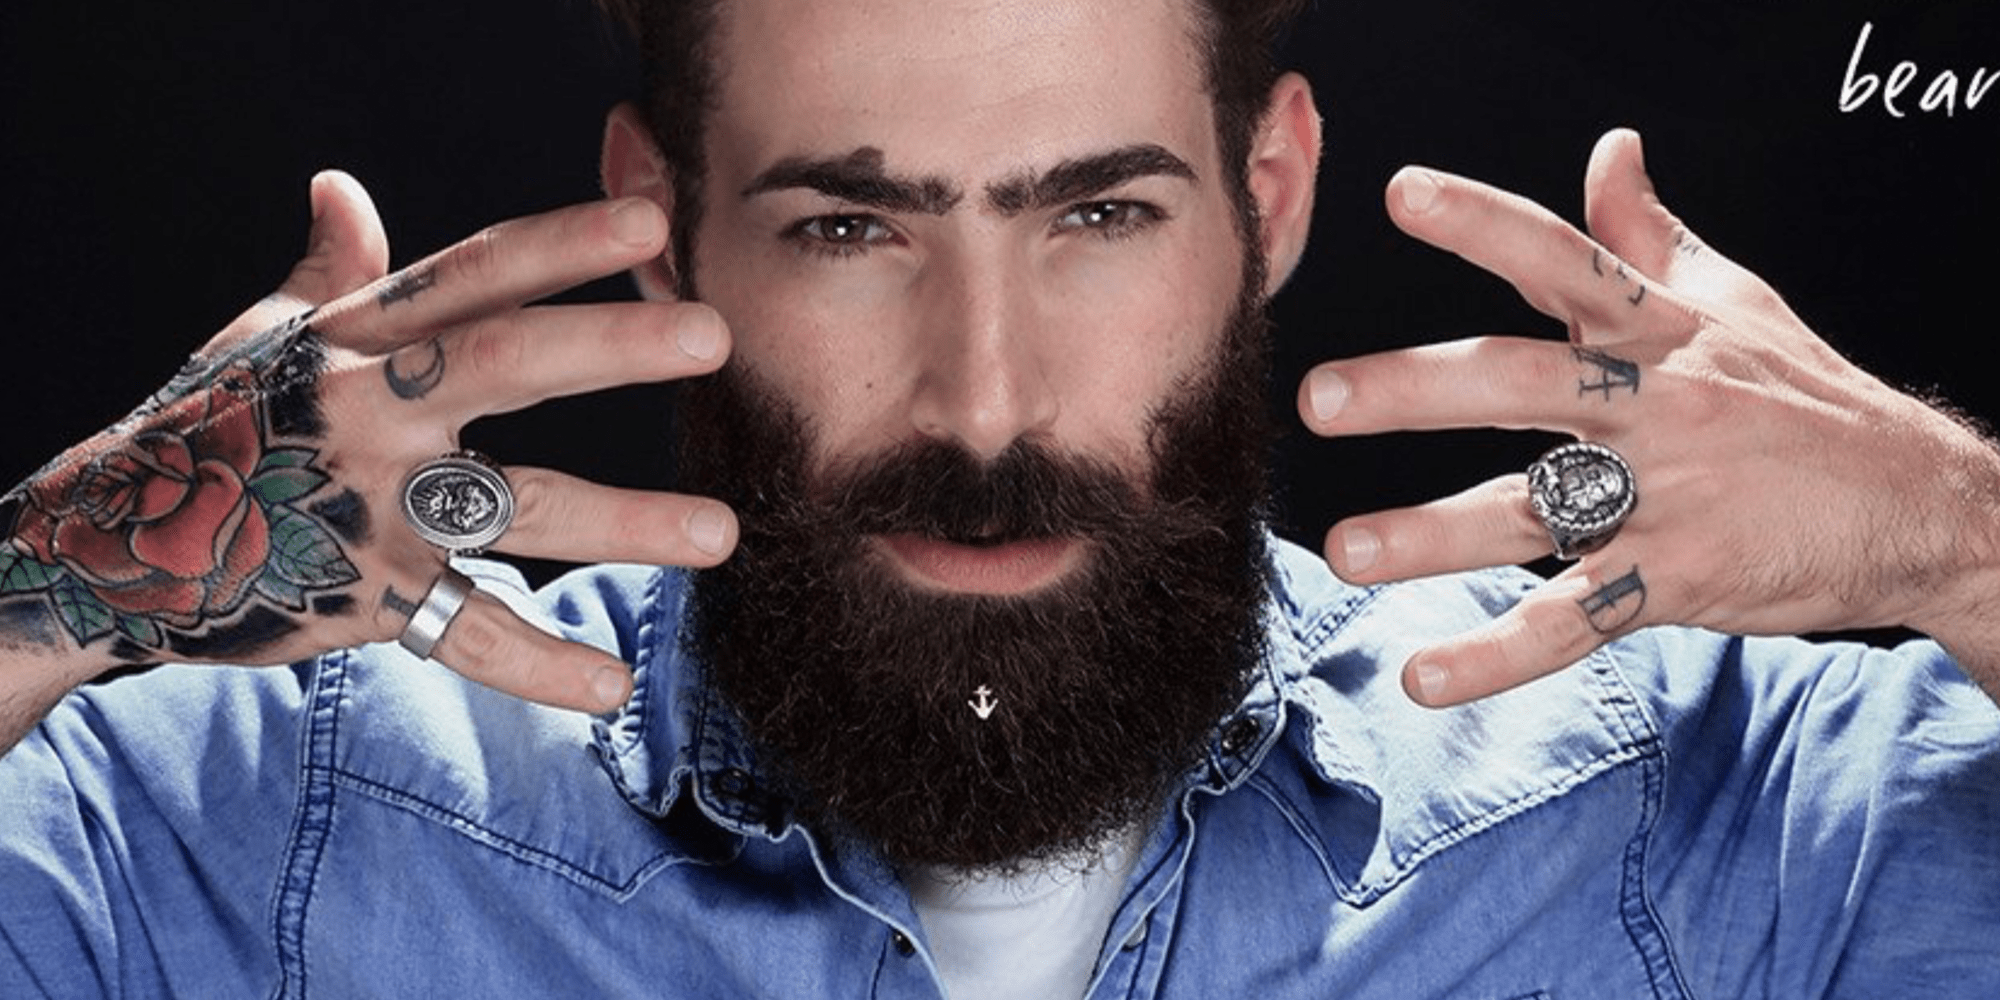 Beard Jewels sind der neueste Trend im Netz. Jetzt können auch Männer Glitzersteine tragen.